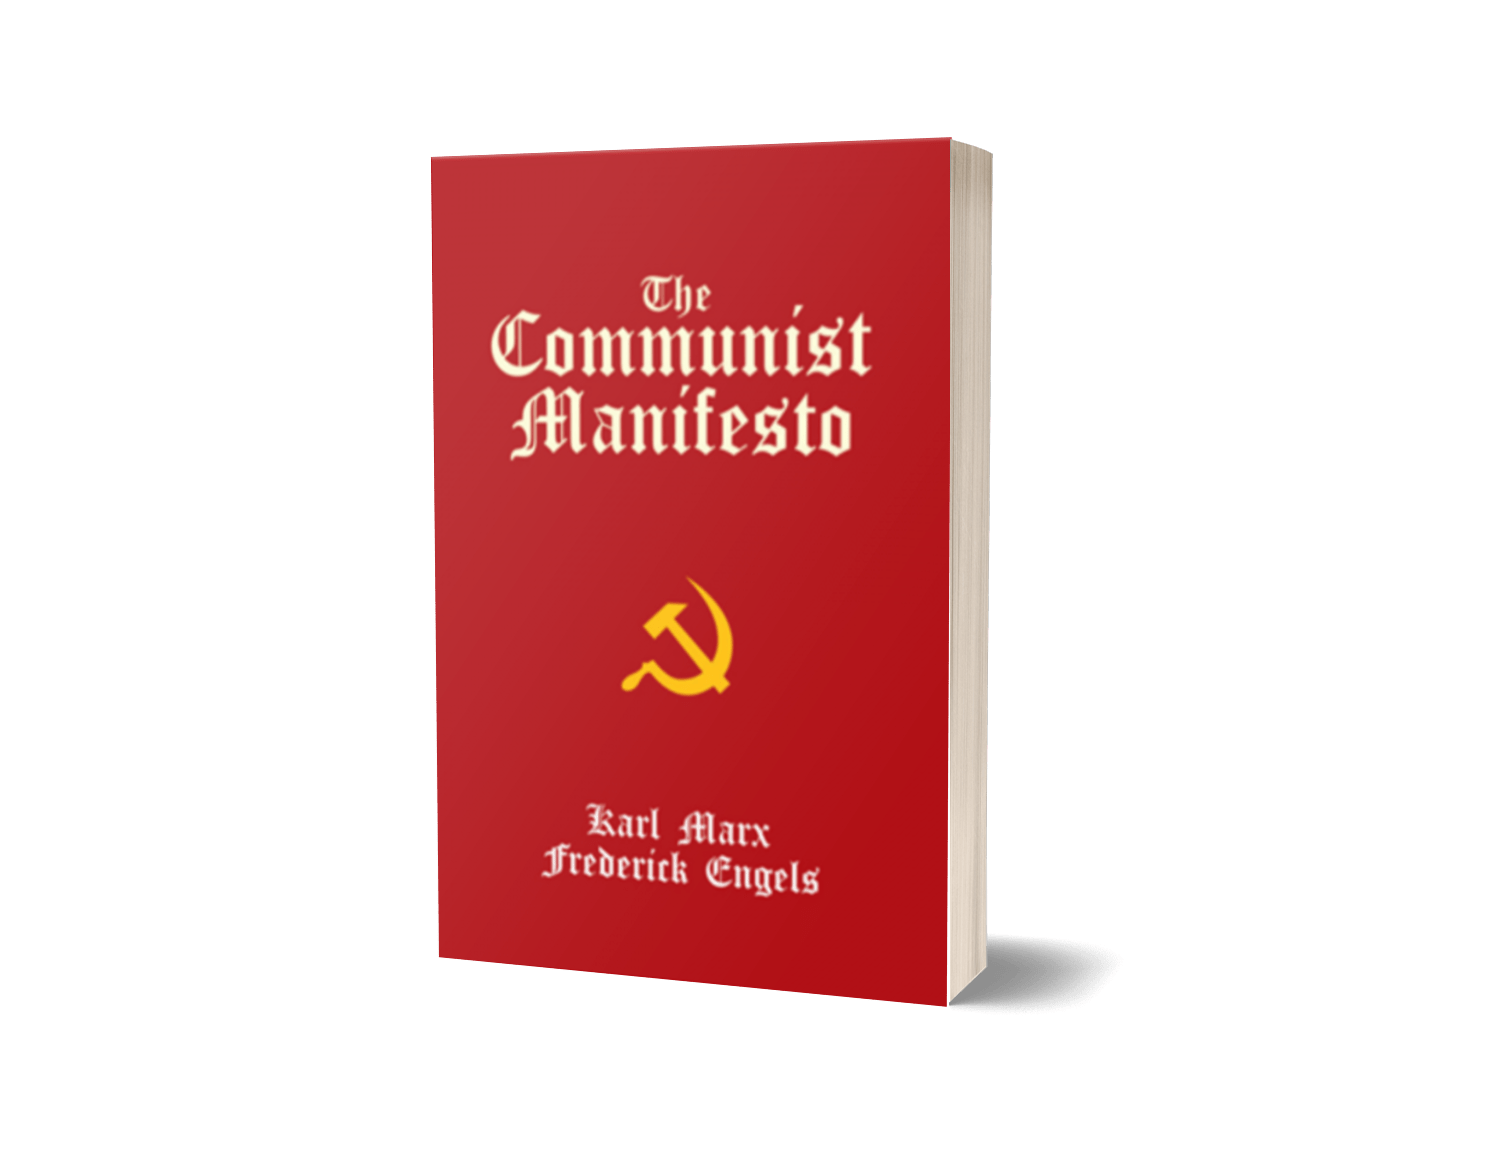 The Communist Manifesto By Karl Marx